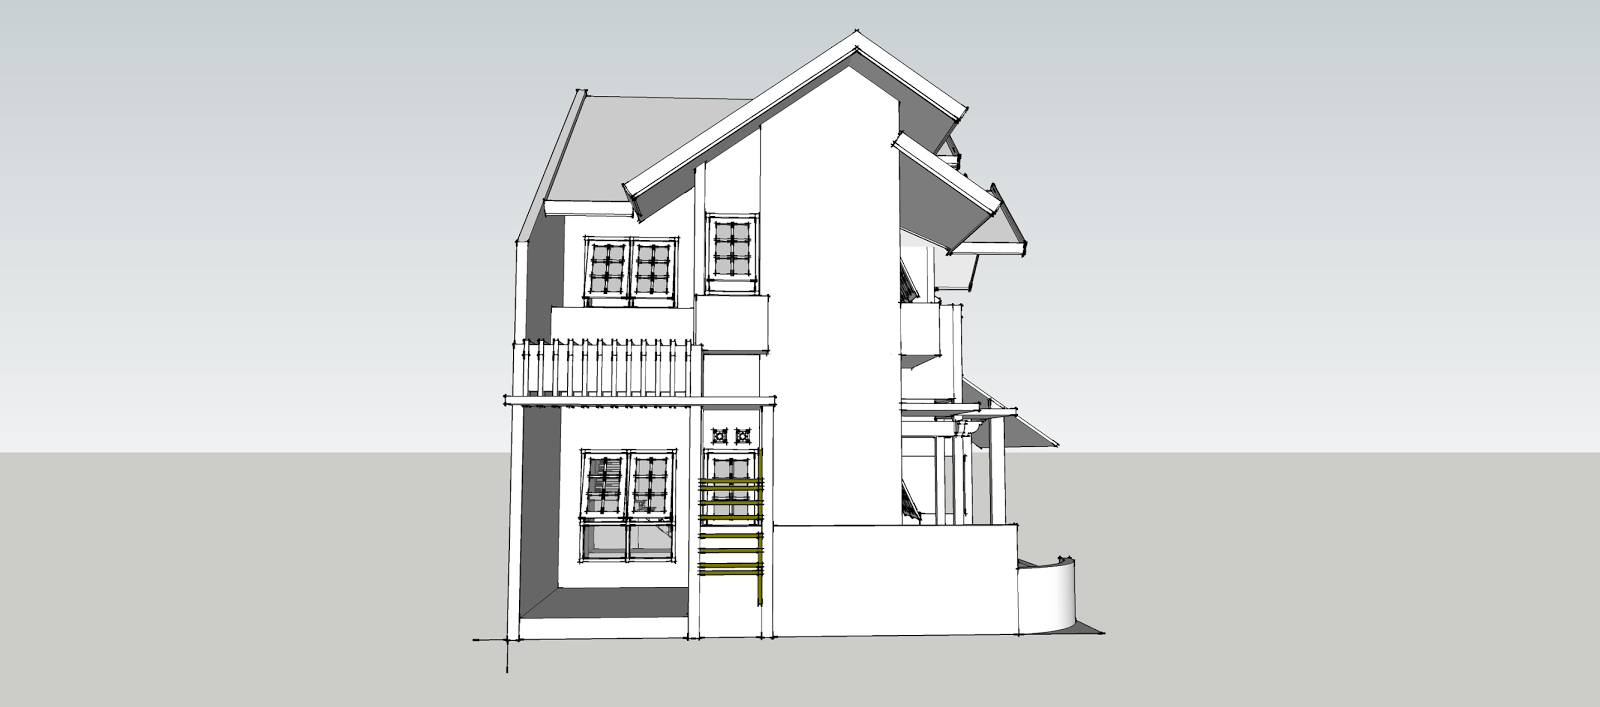  desain rumah, desain rumah sederhana, desain rumah minimalis sederhana